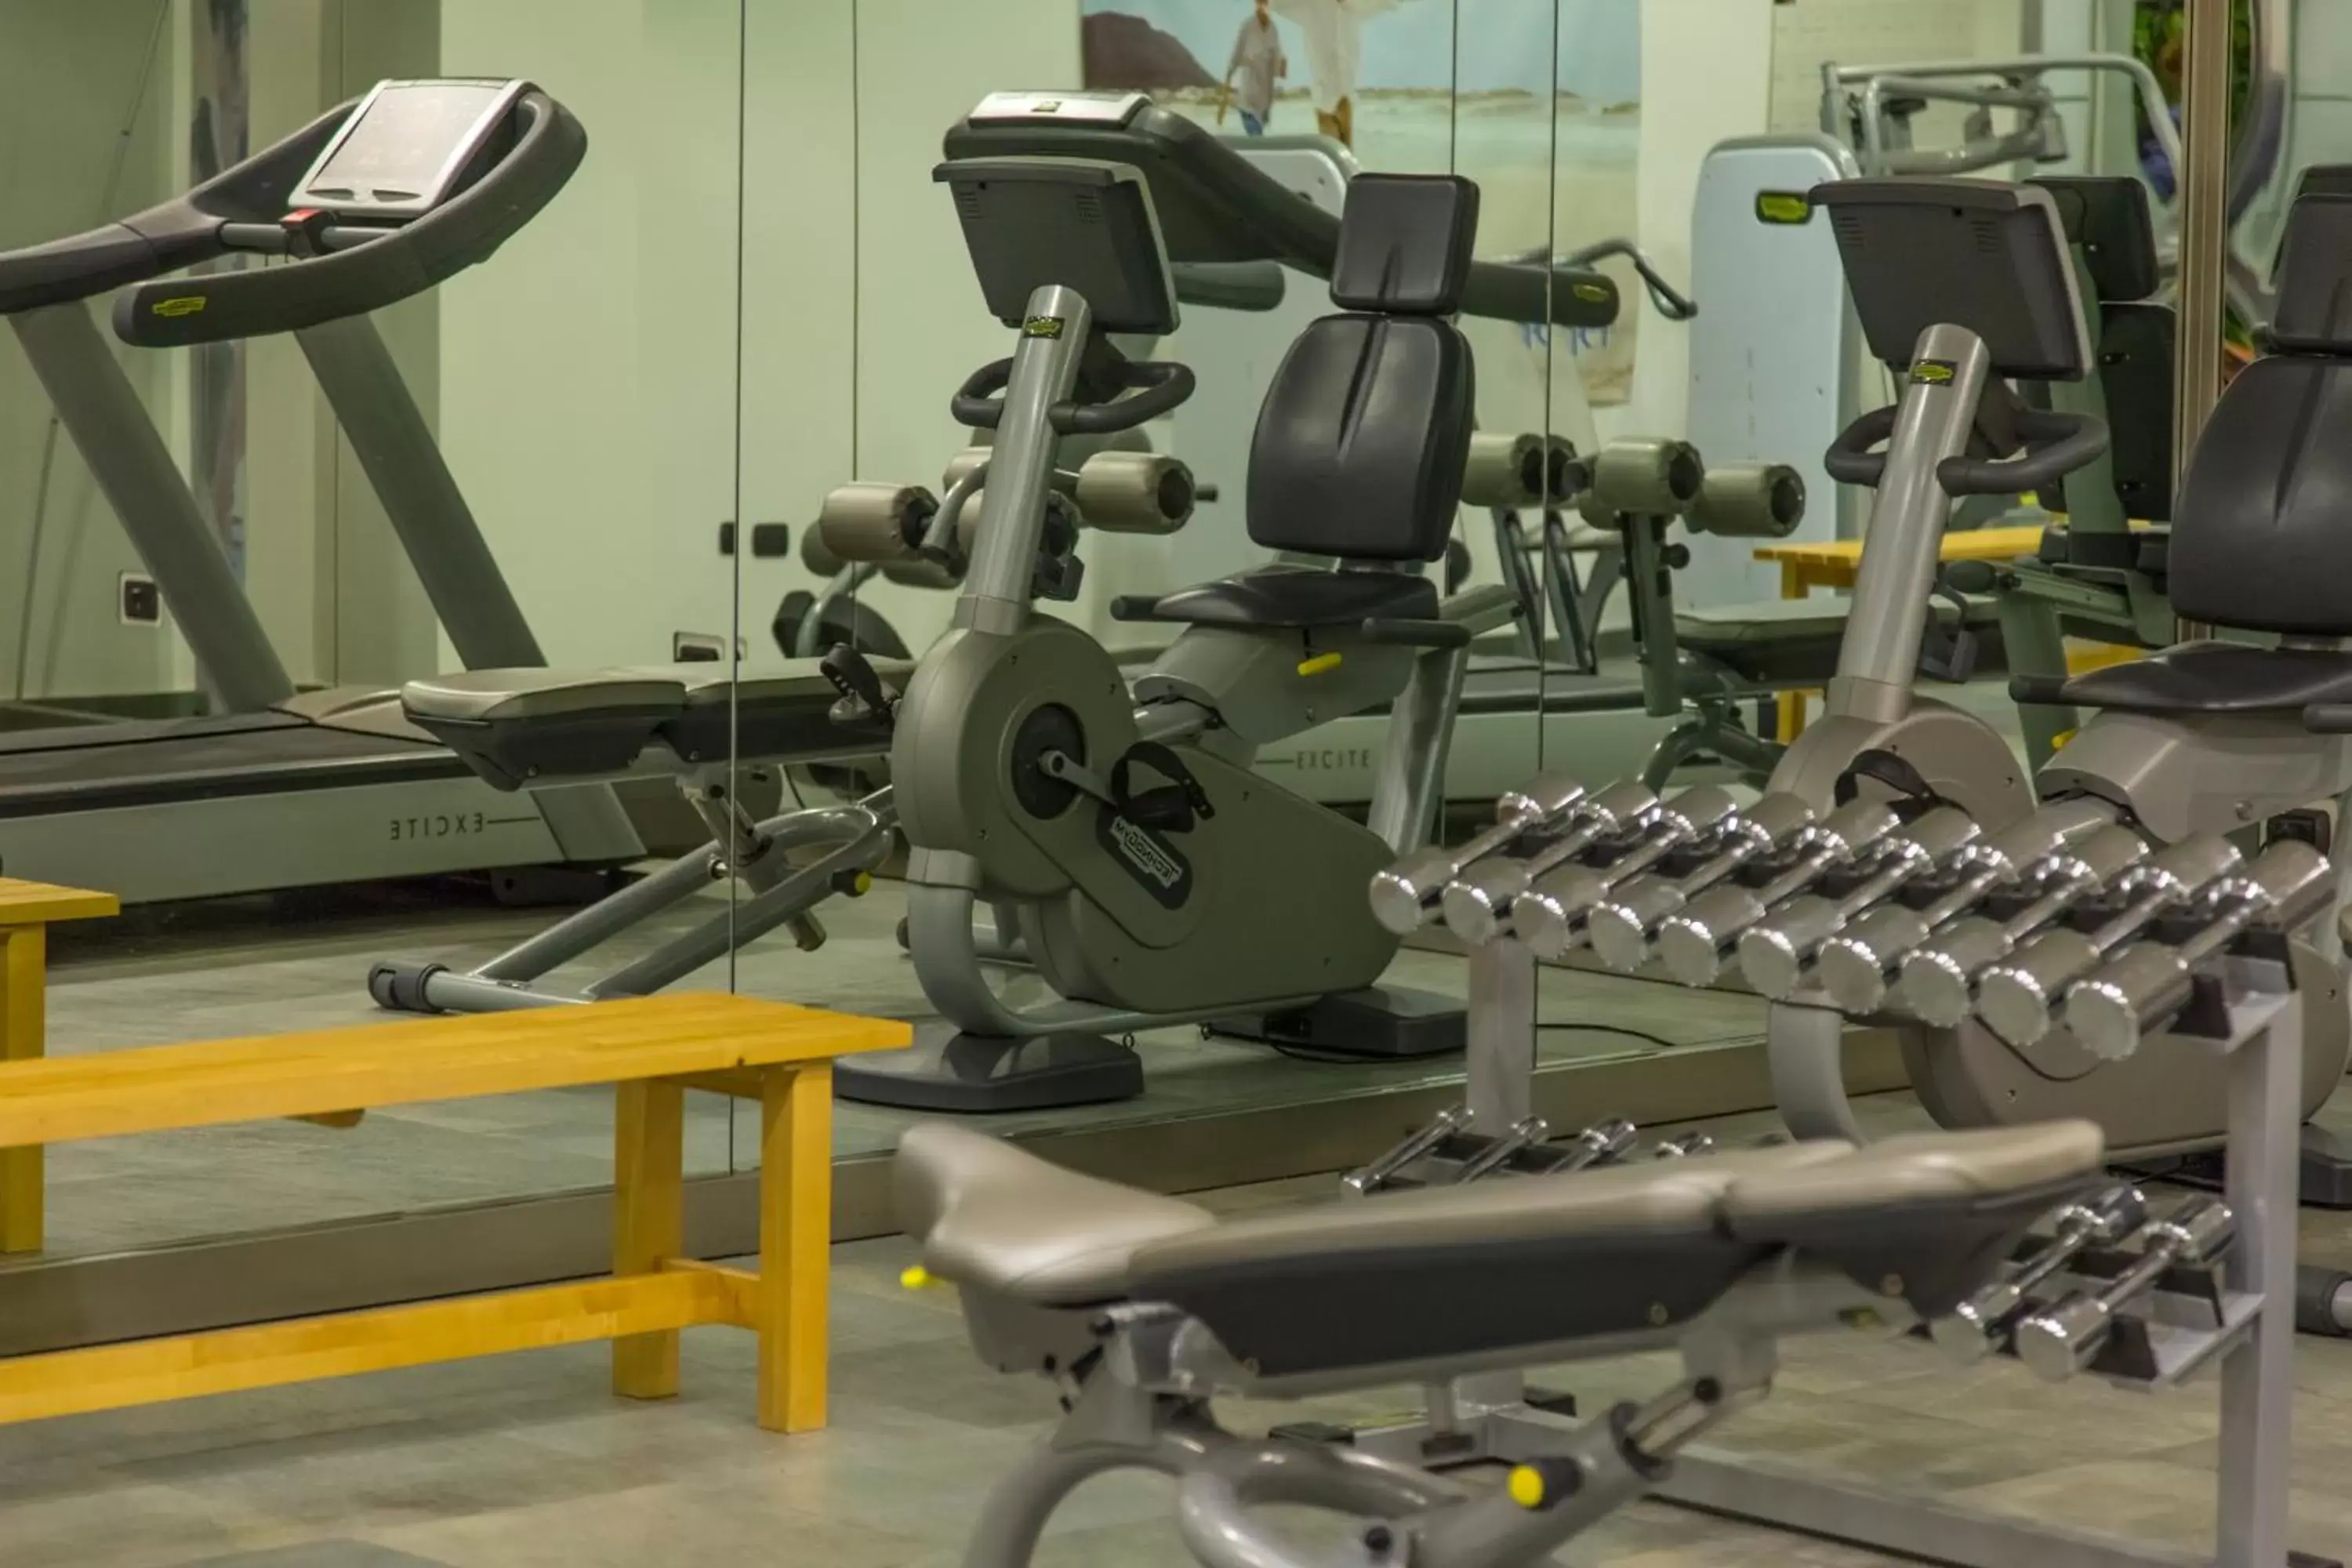 Fitness centre/facilities, Fitness Center/Facilities in Hotel Futura Centro Congressi